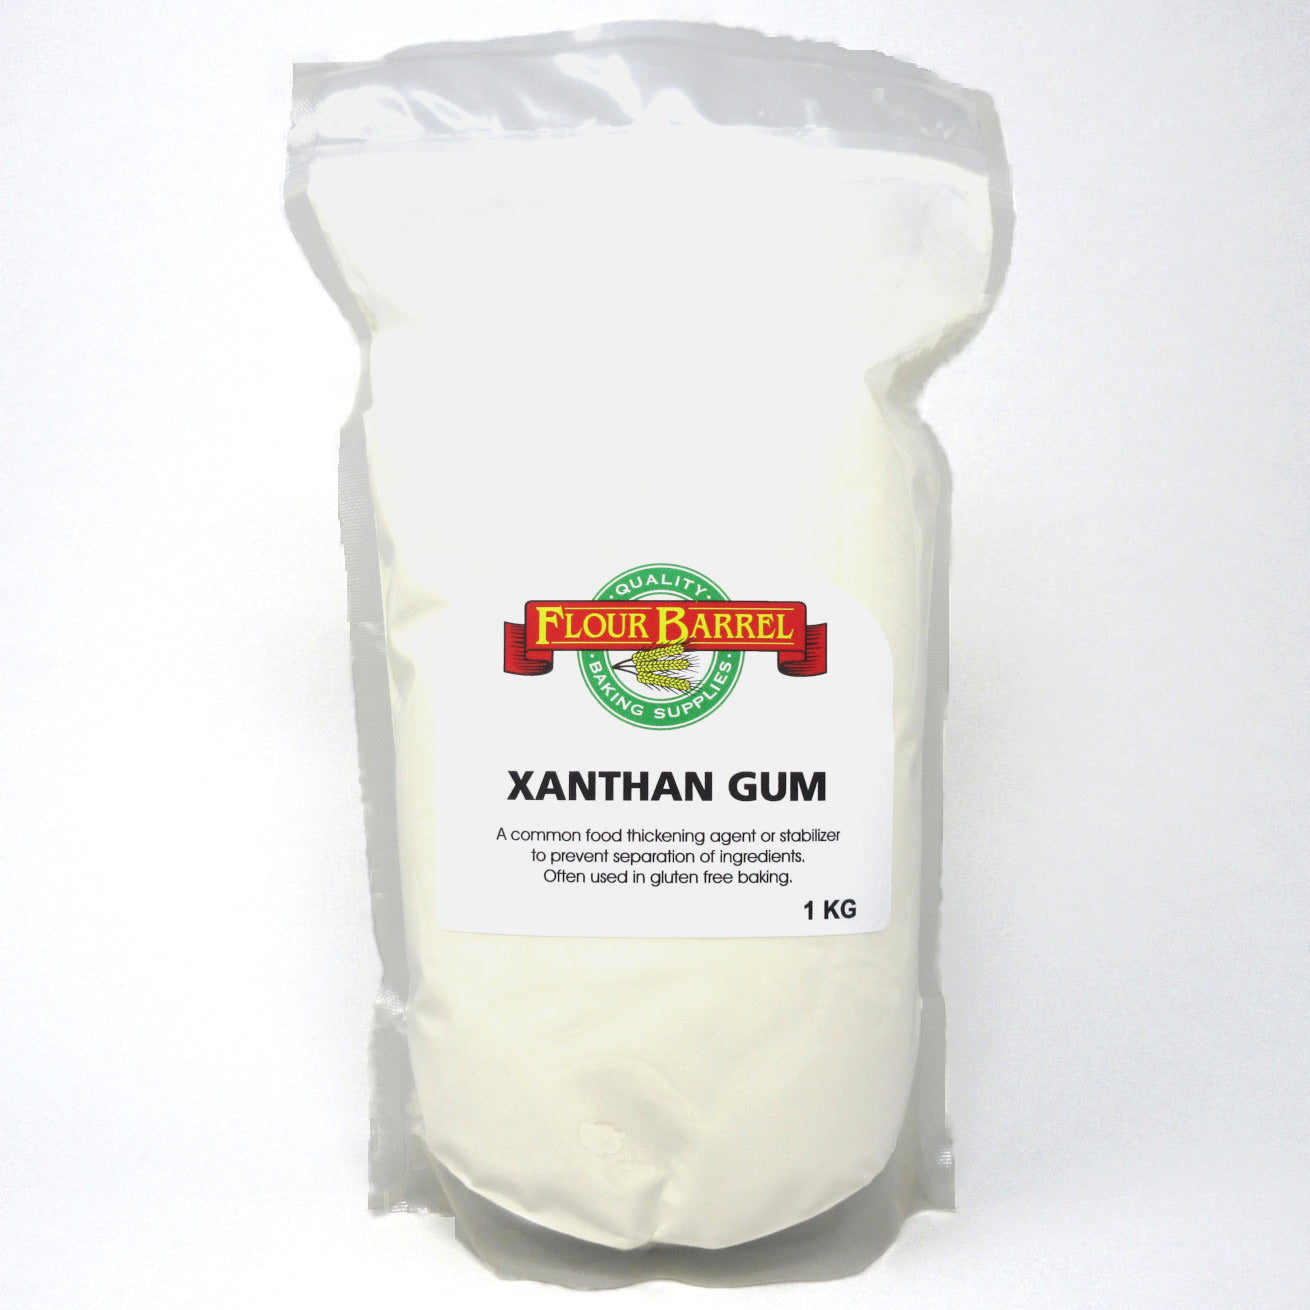 Flour Barrel product image - Xanthan Gum